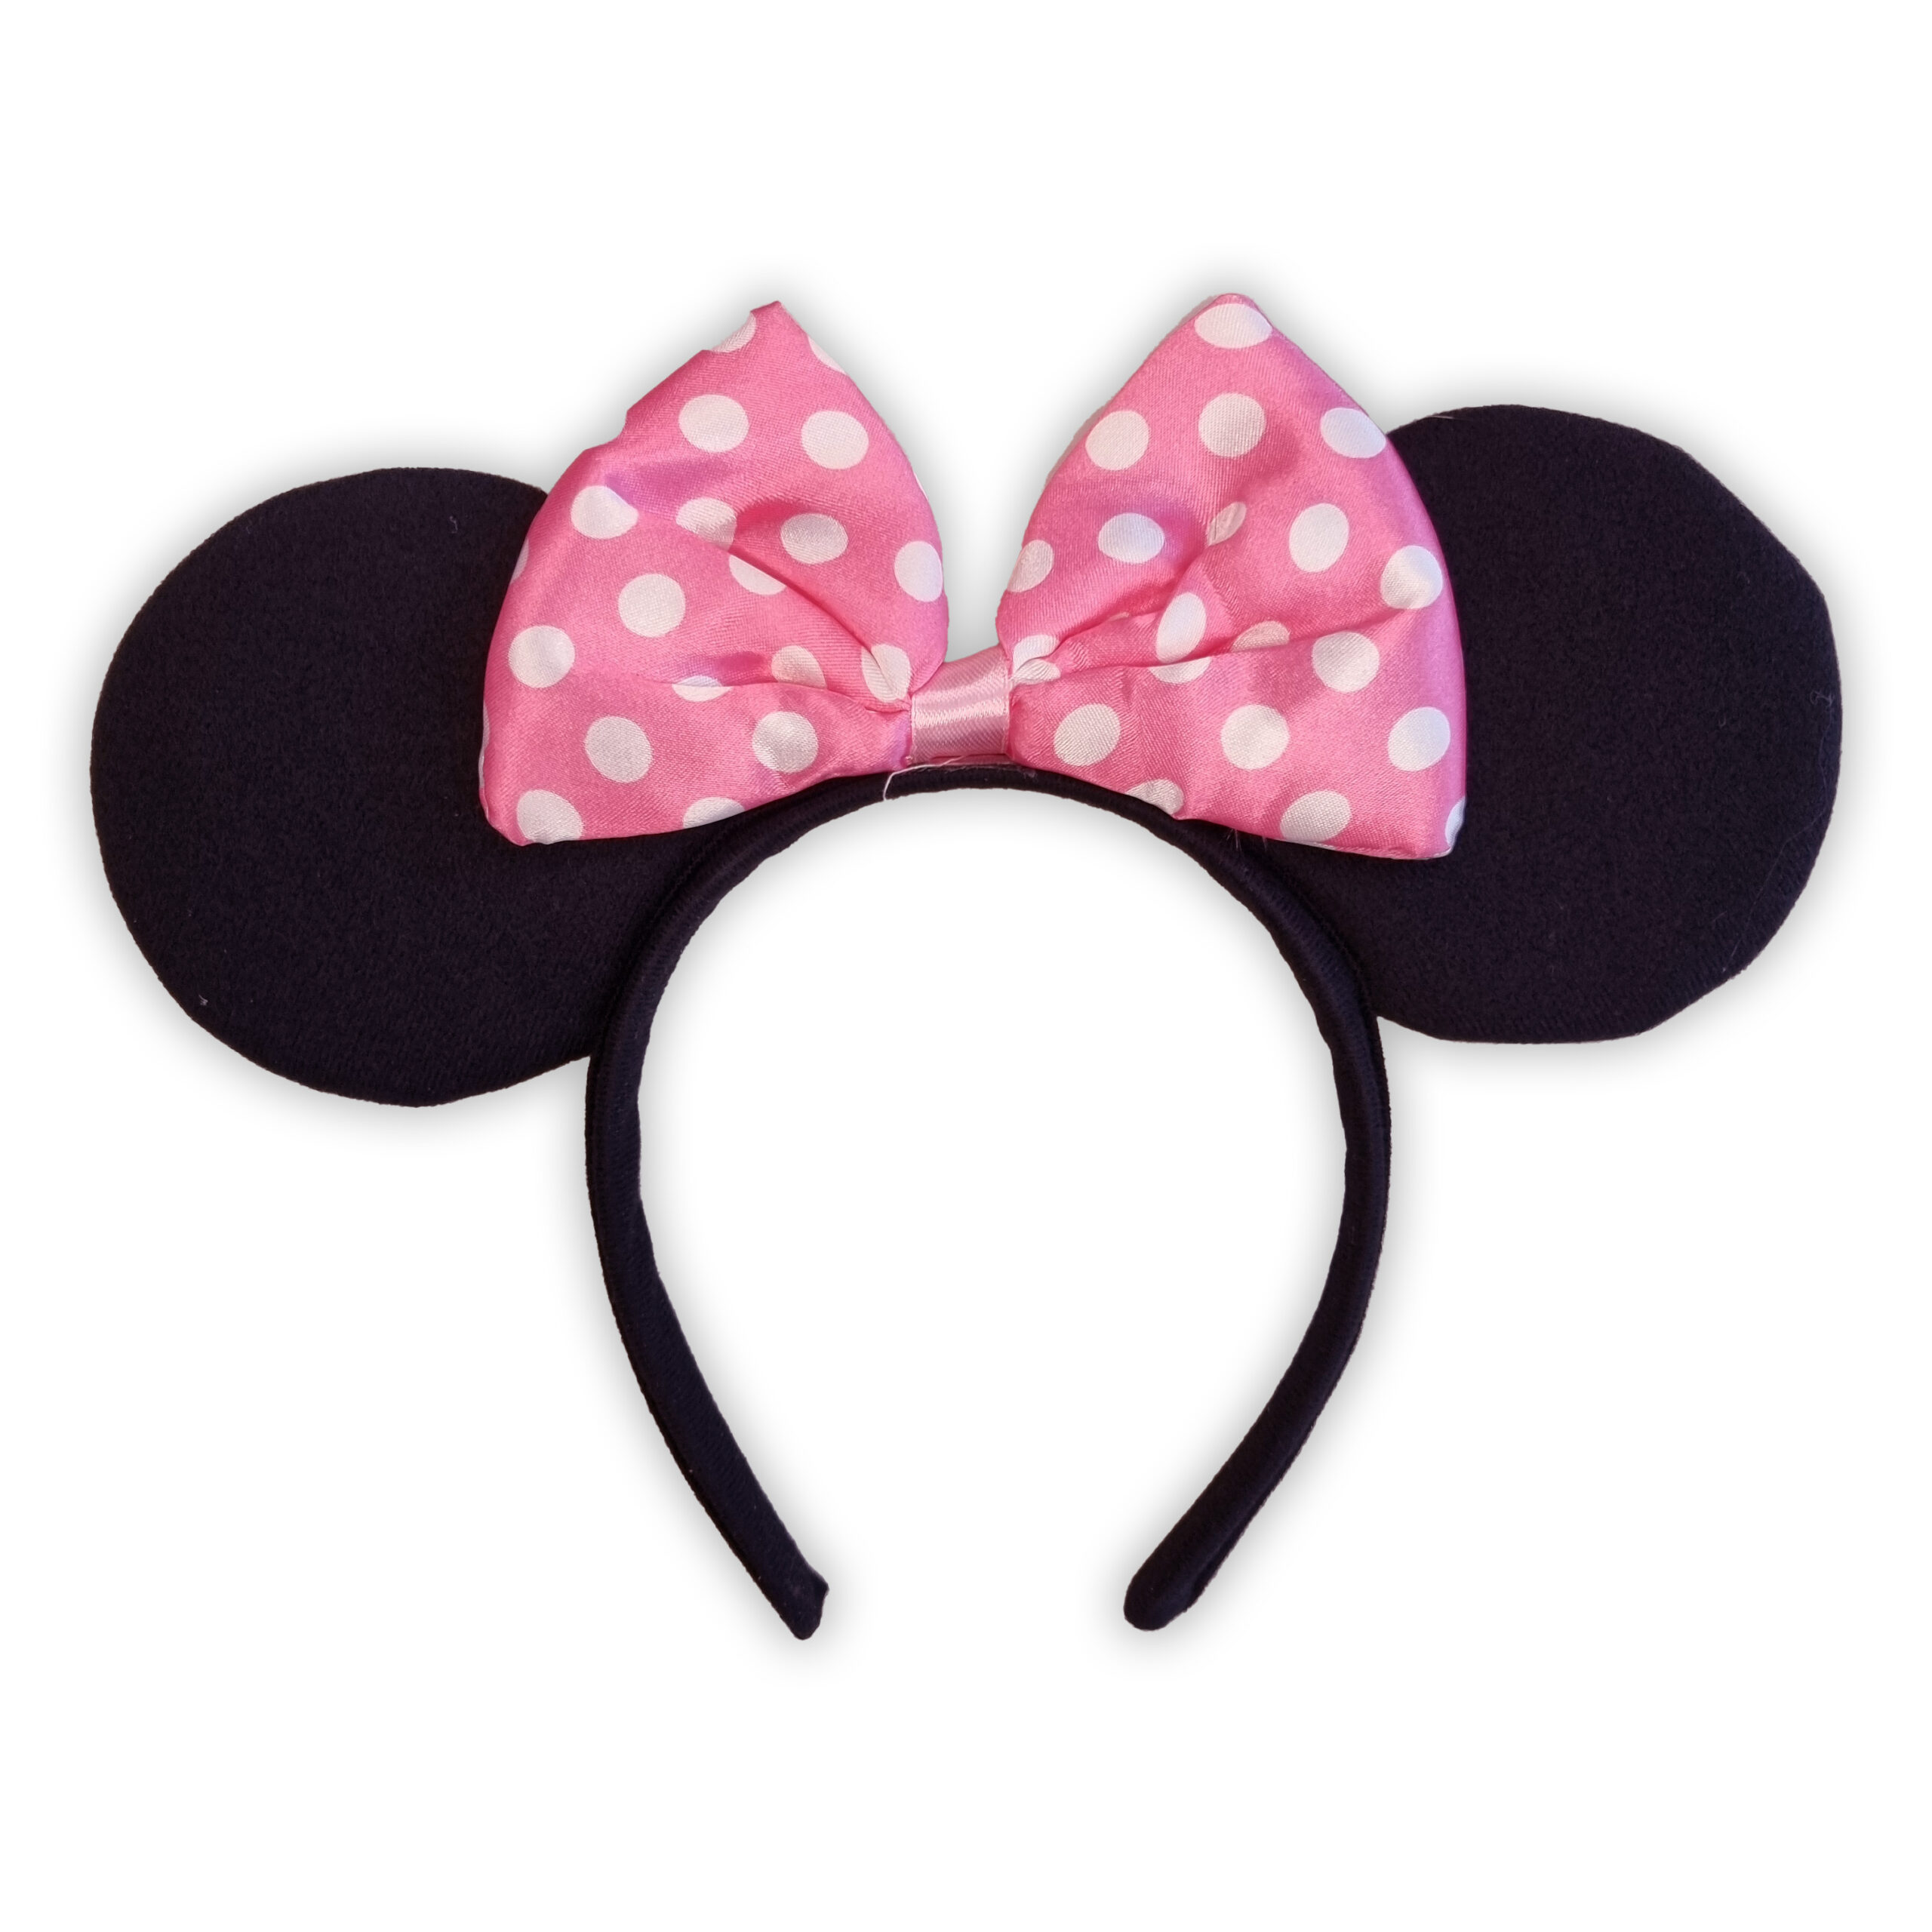 Cerchietto con orecchie Minnie Disney per bambina in Vendita Online